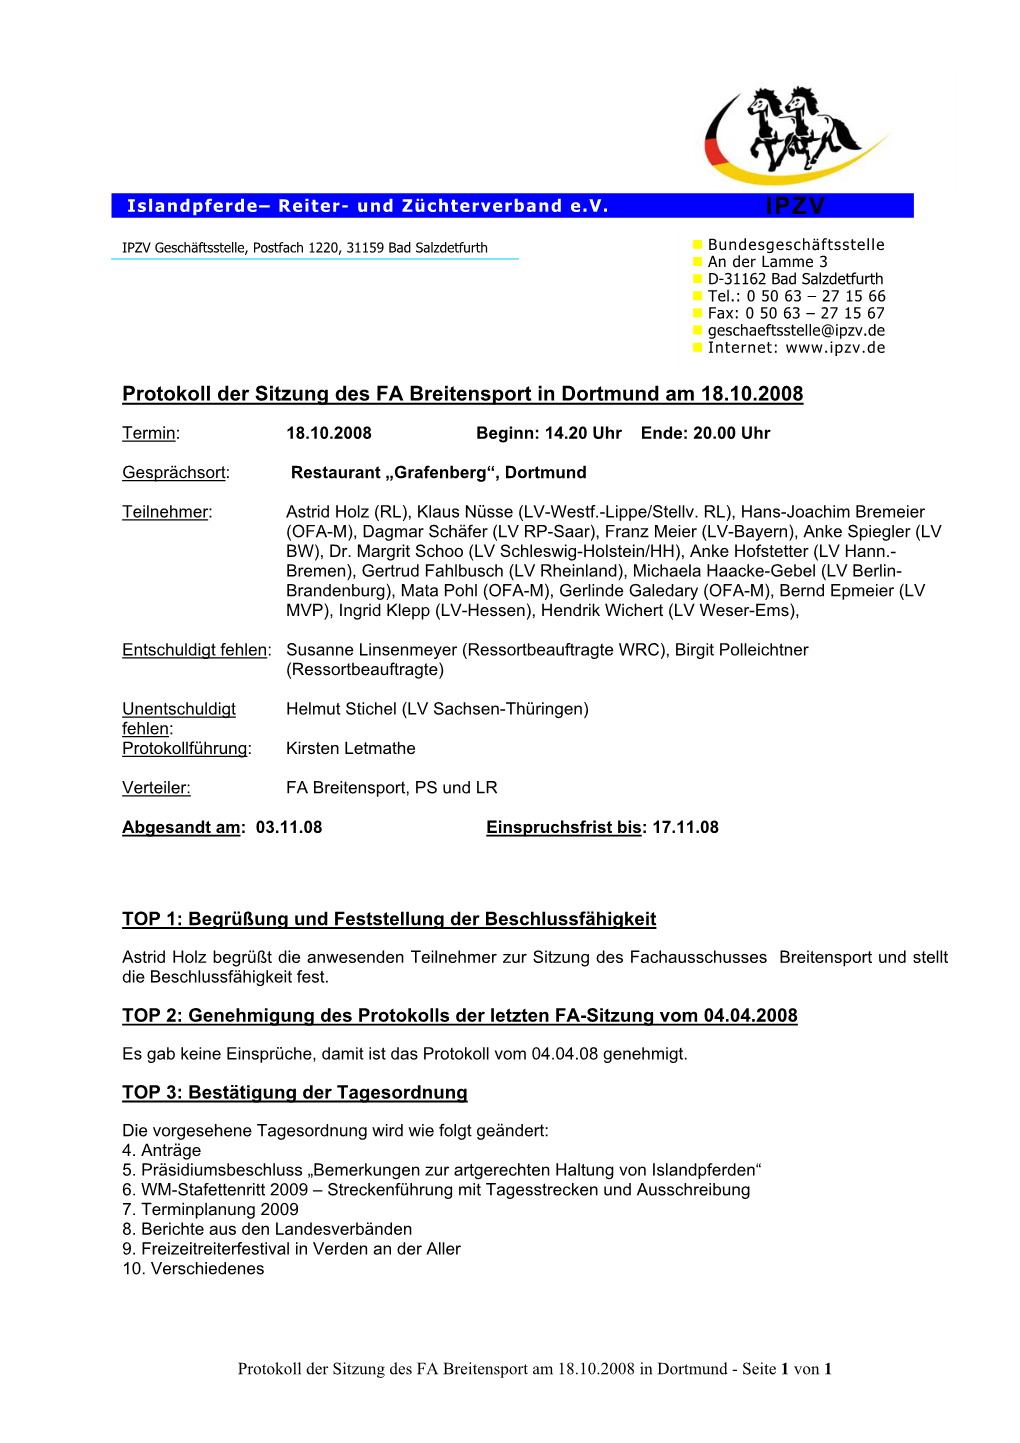 Protokoll Der Sitzung Des FA Breitensport in Dortmund Am 18.10.2008